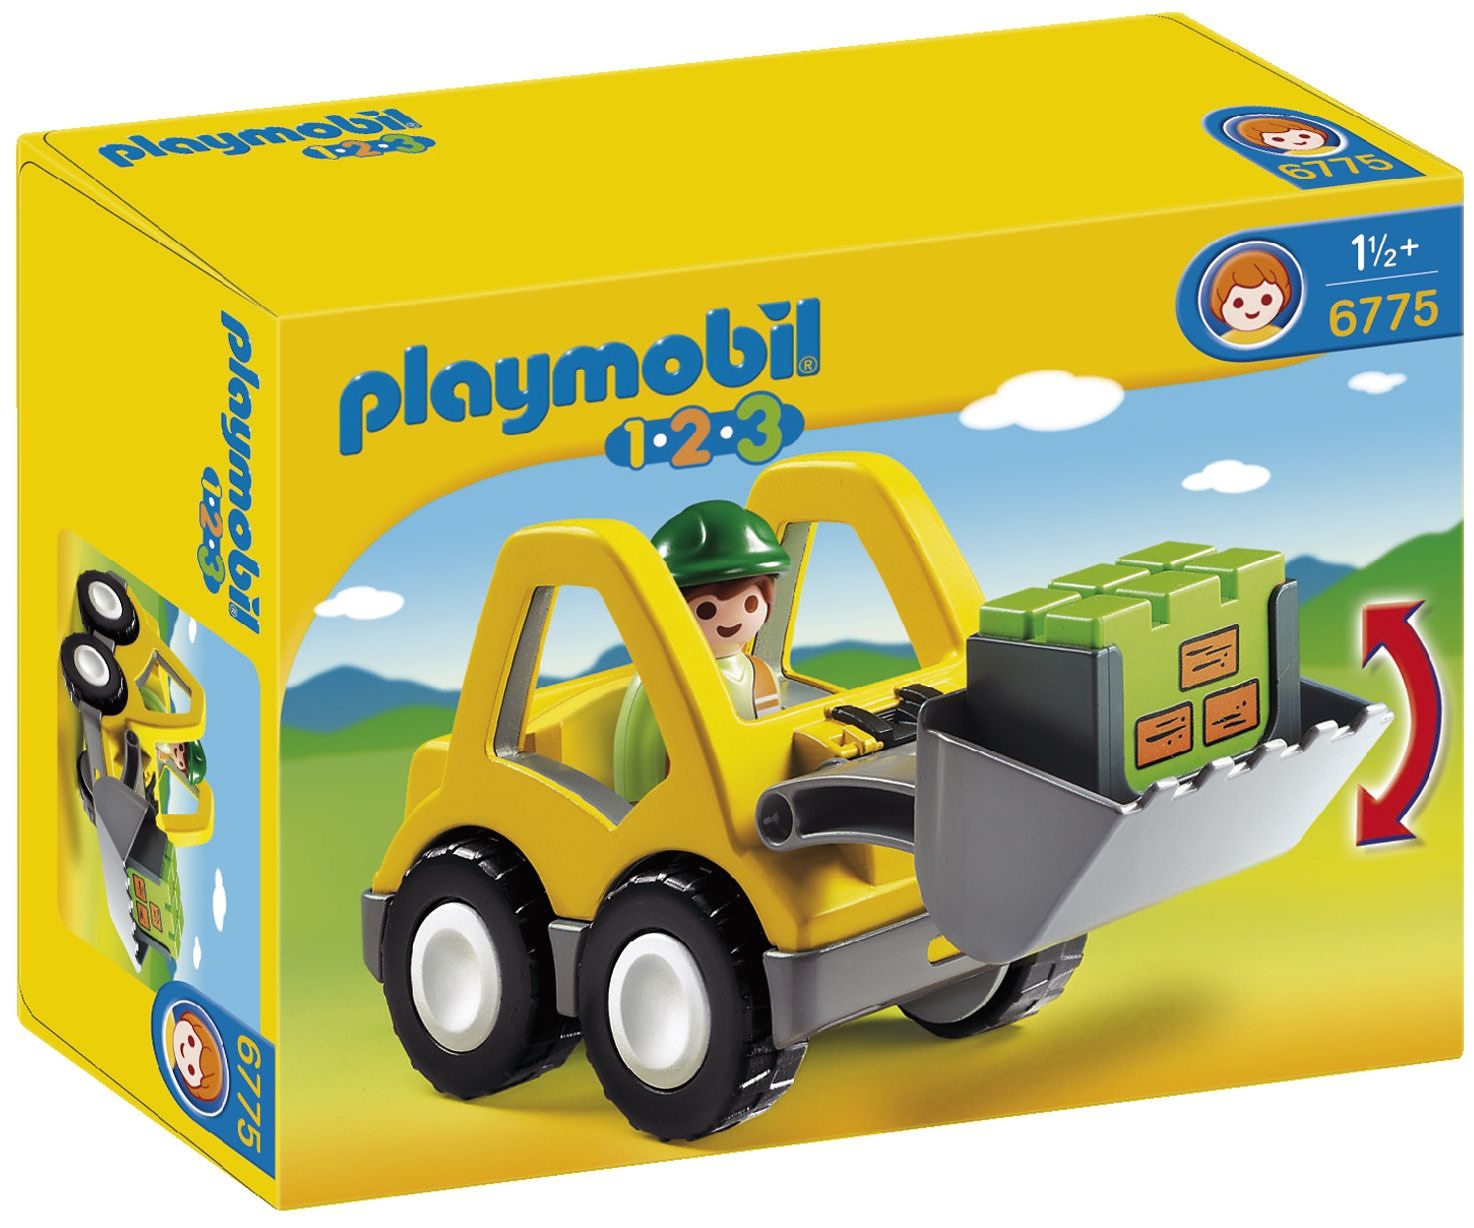 intern Verdraaiing Gevoel van schuld Playmobil online kopen? Neem dan gauw een kijkje op otto.nl! | OTTO